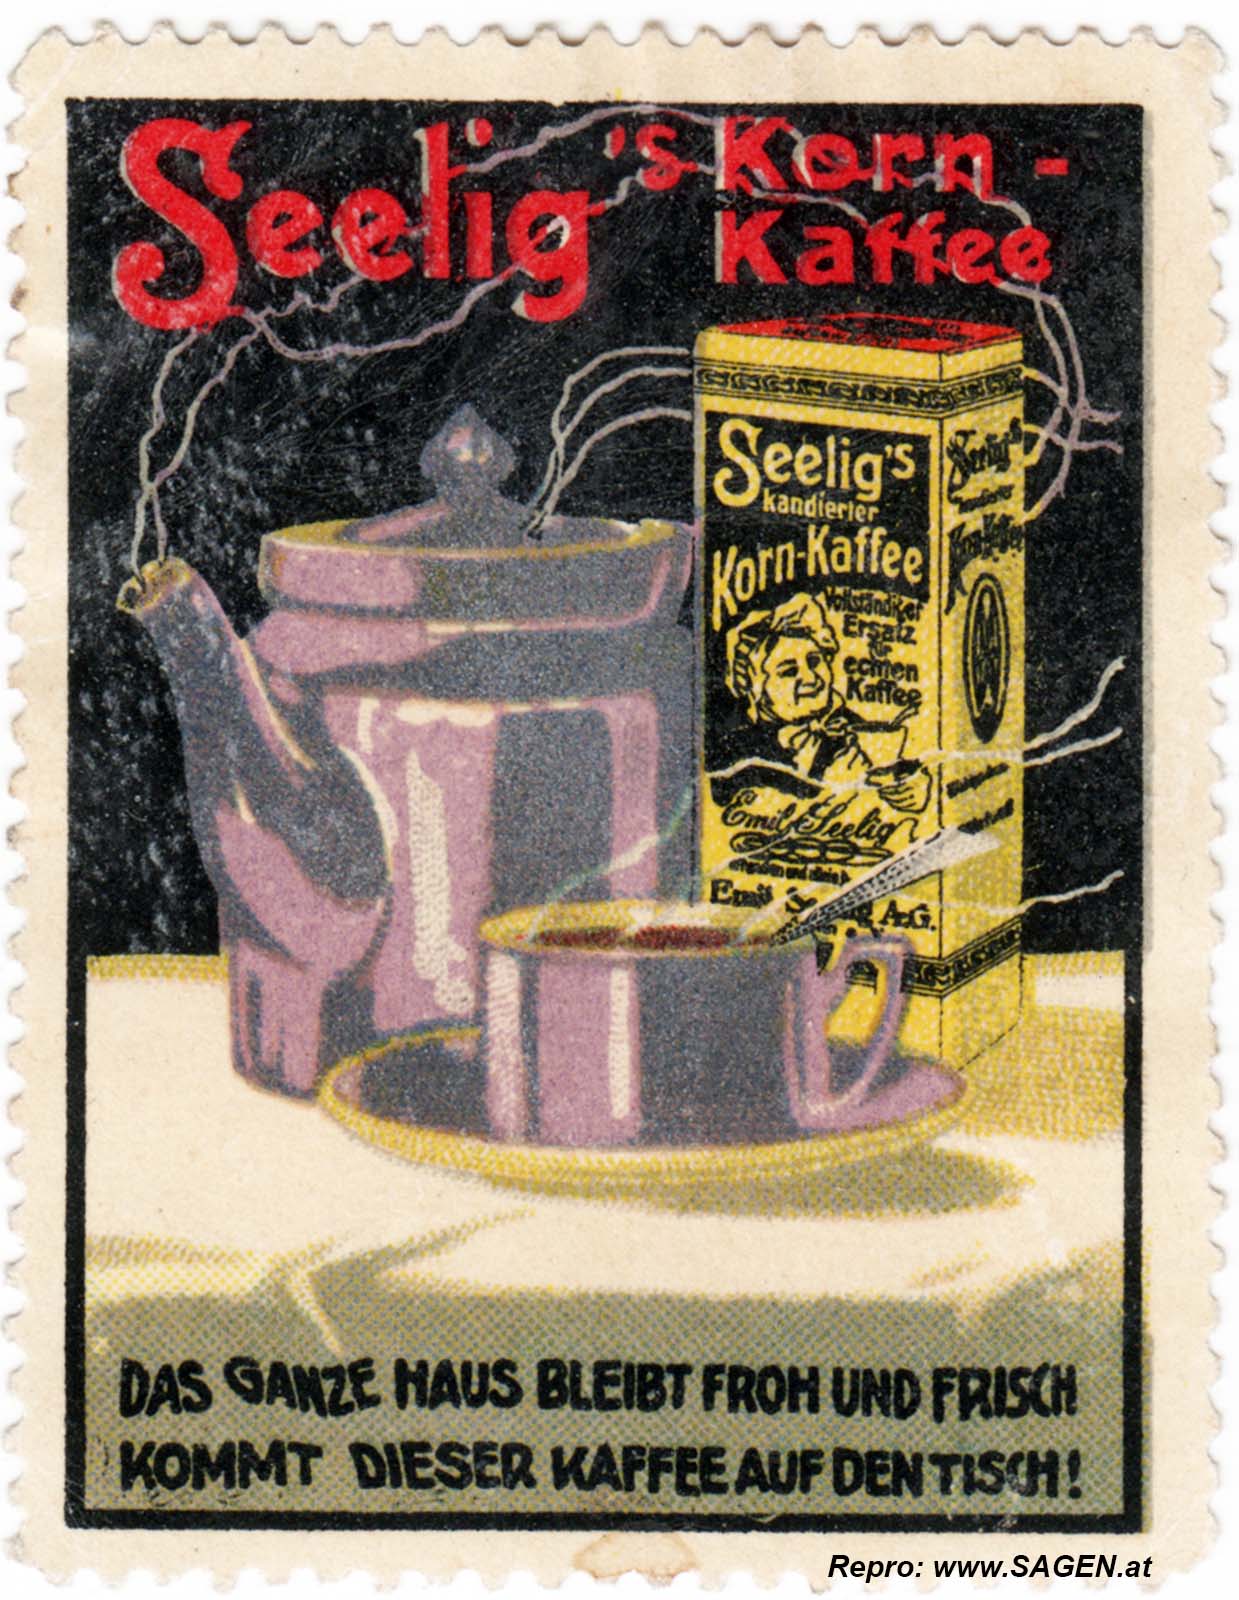 Reklamemarke Seelig's Korn-Kaffee